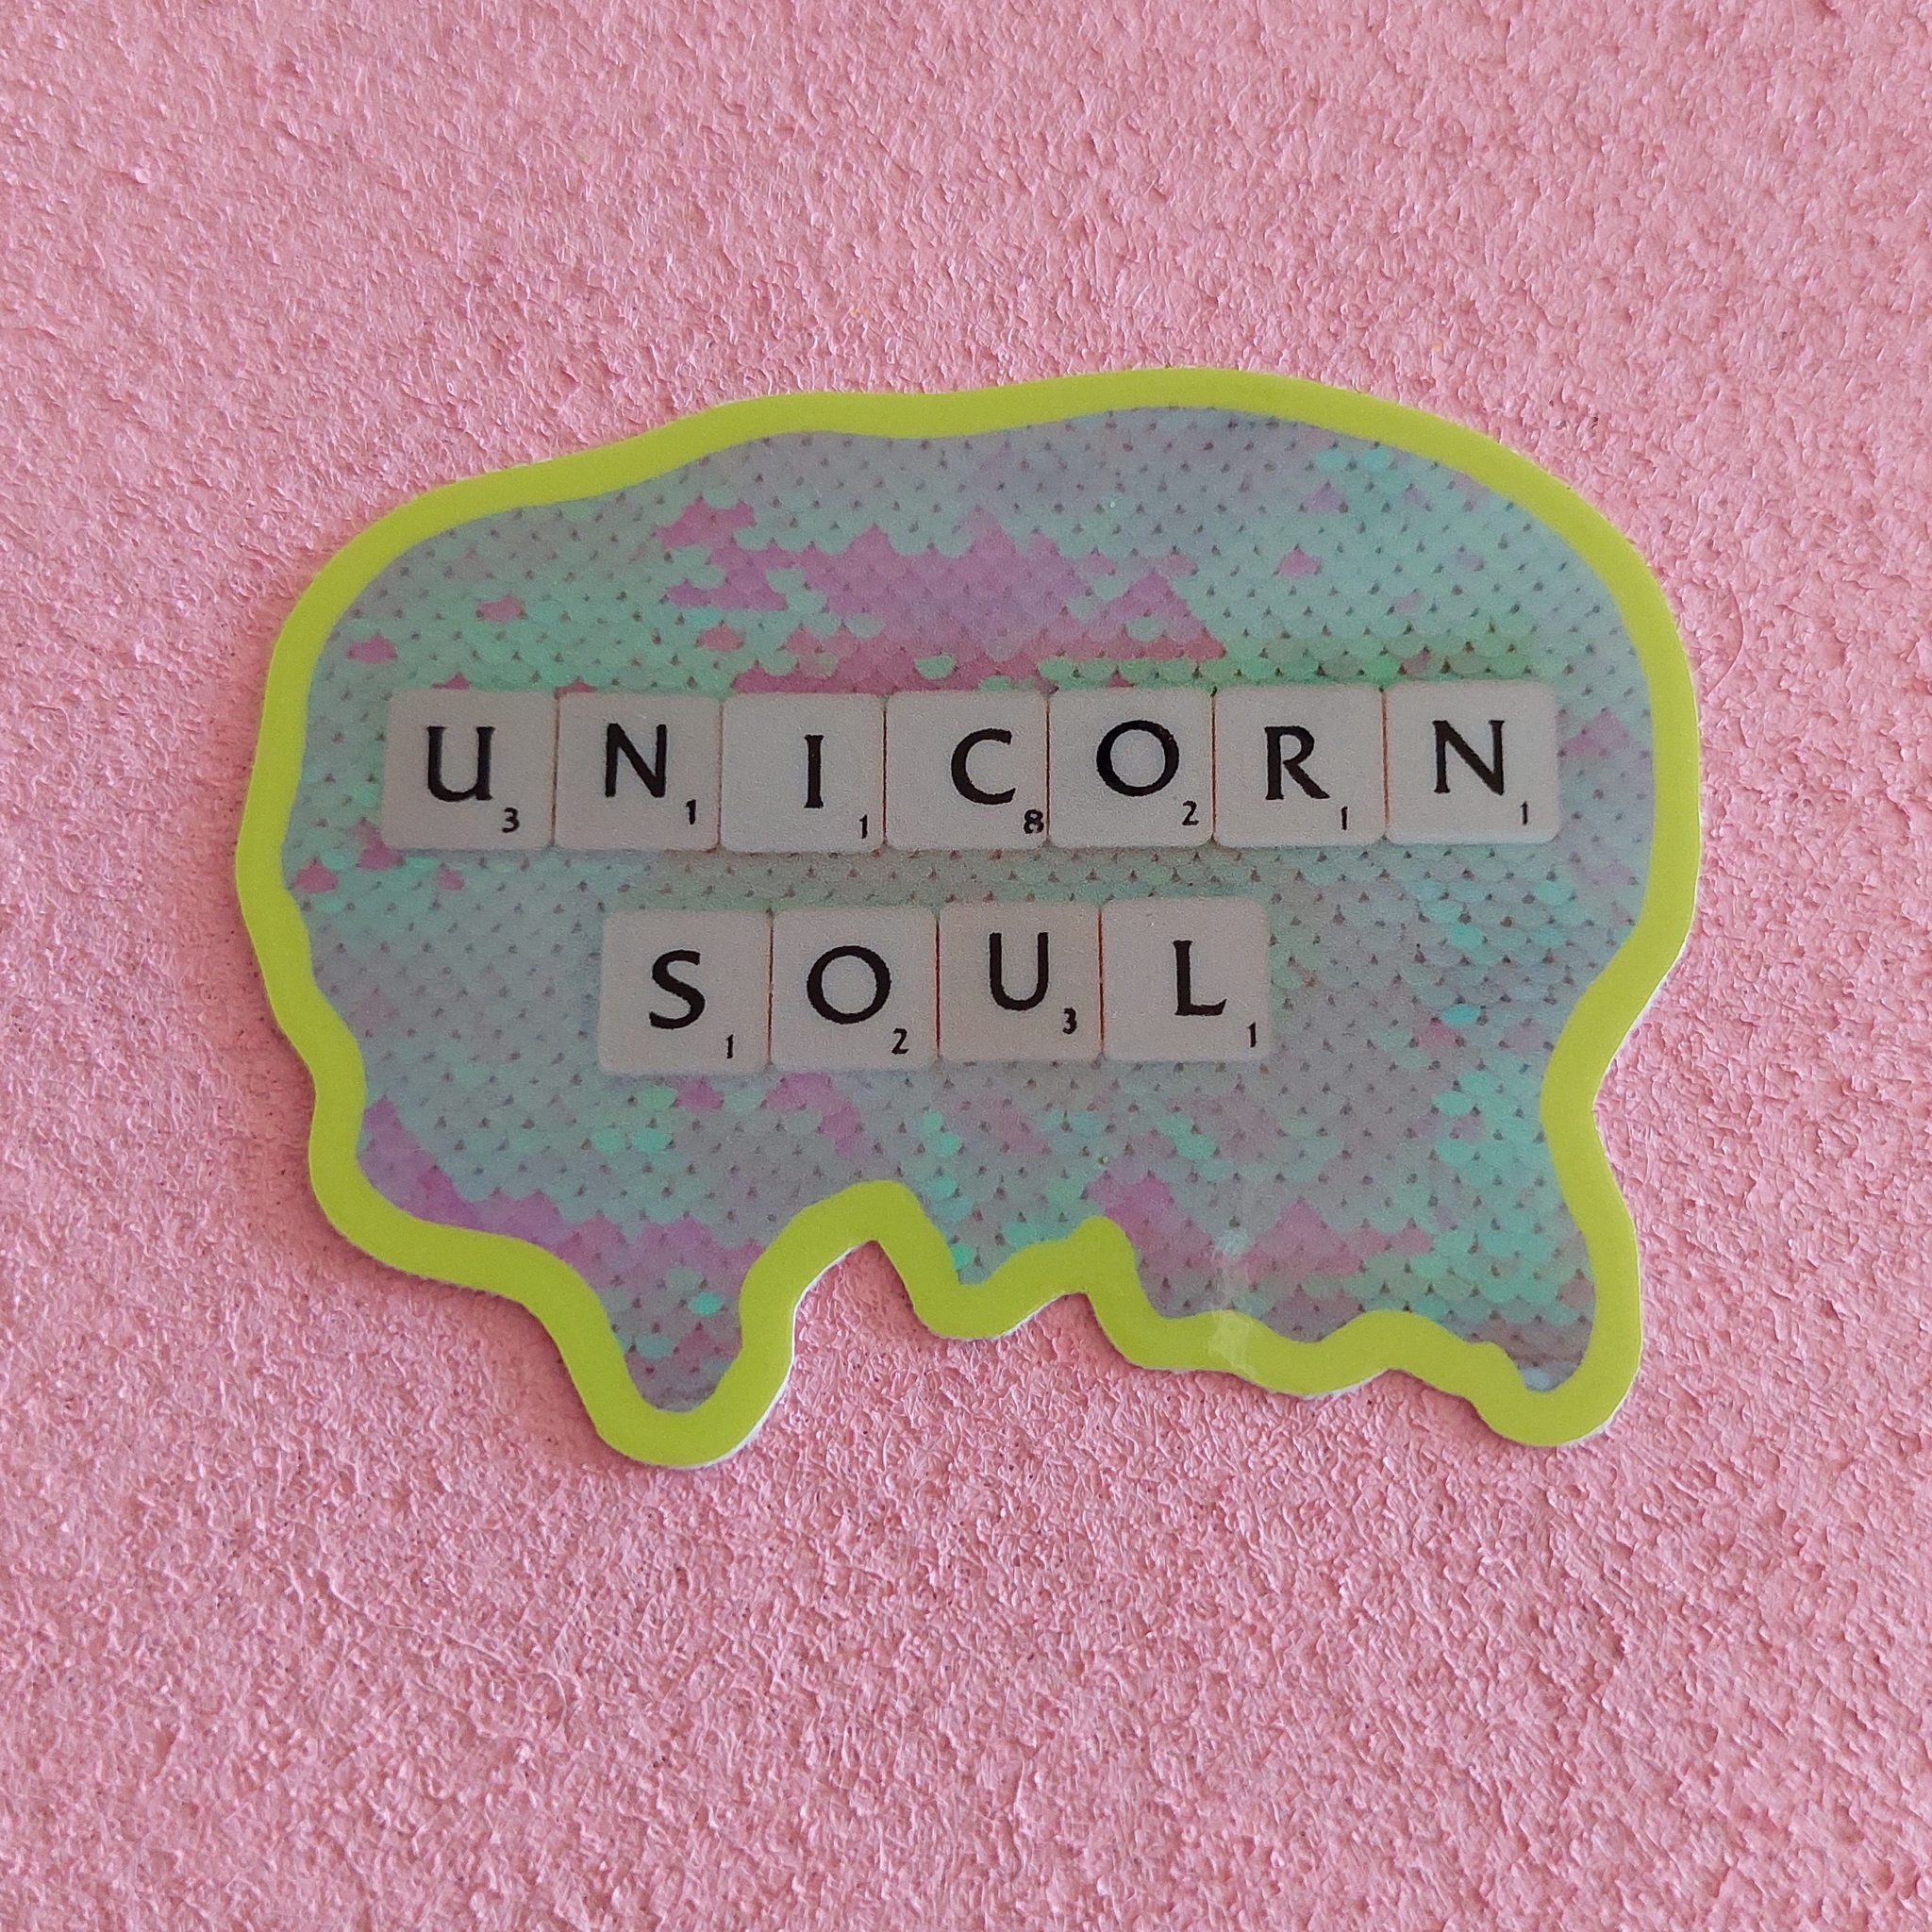 Klistermärke - Unicorn soul (neongul rundad kant)